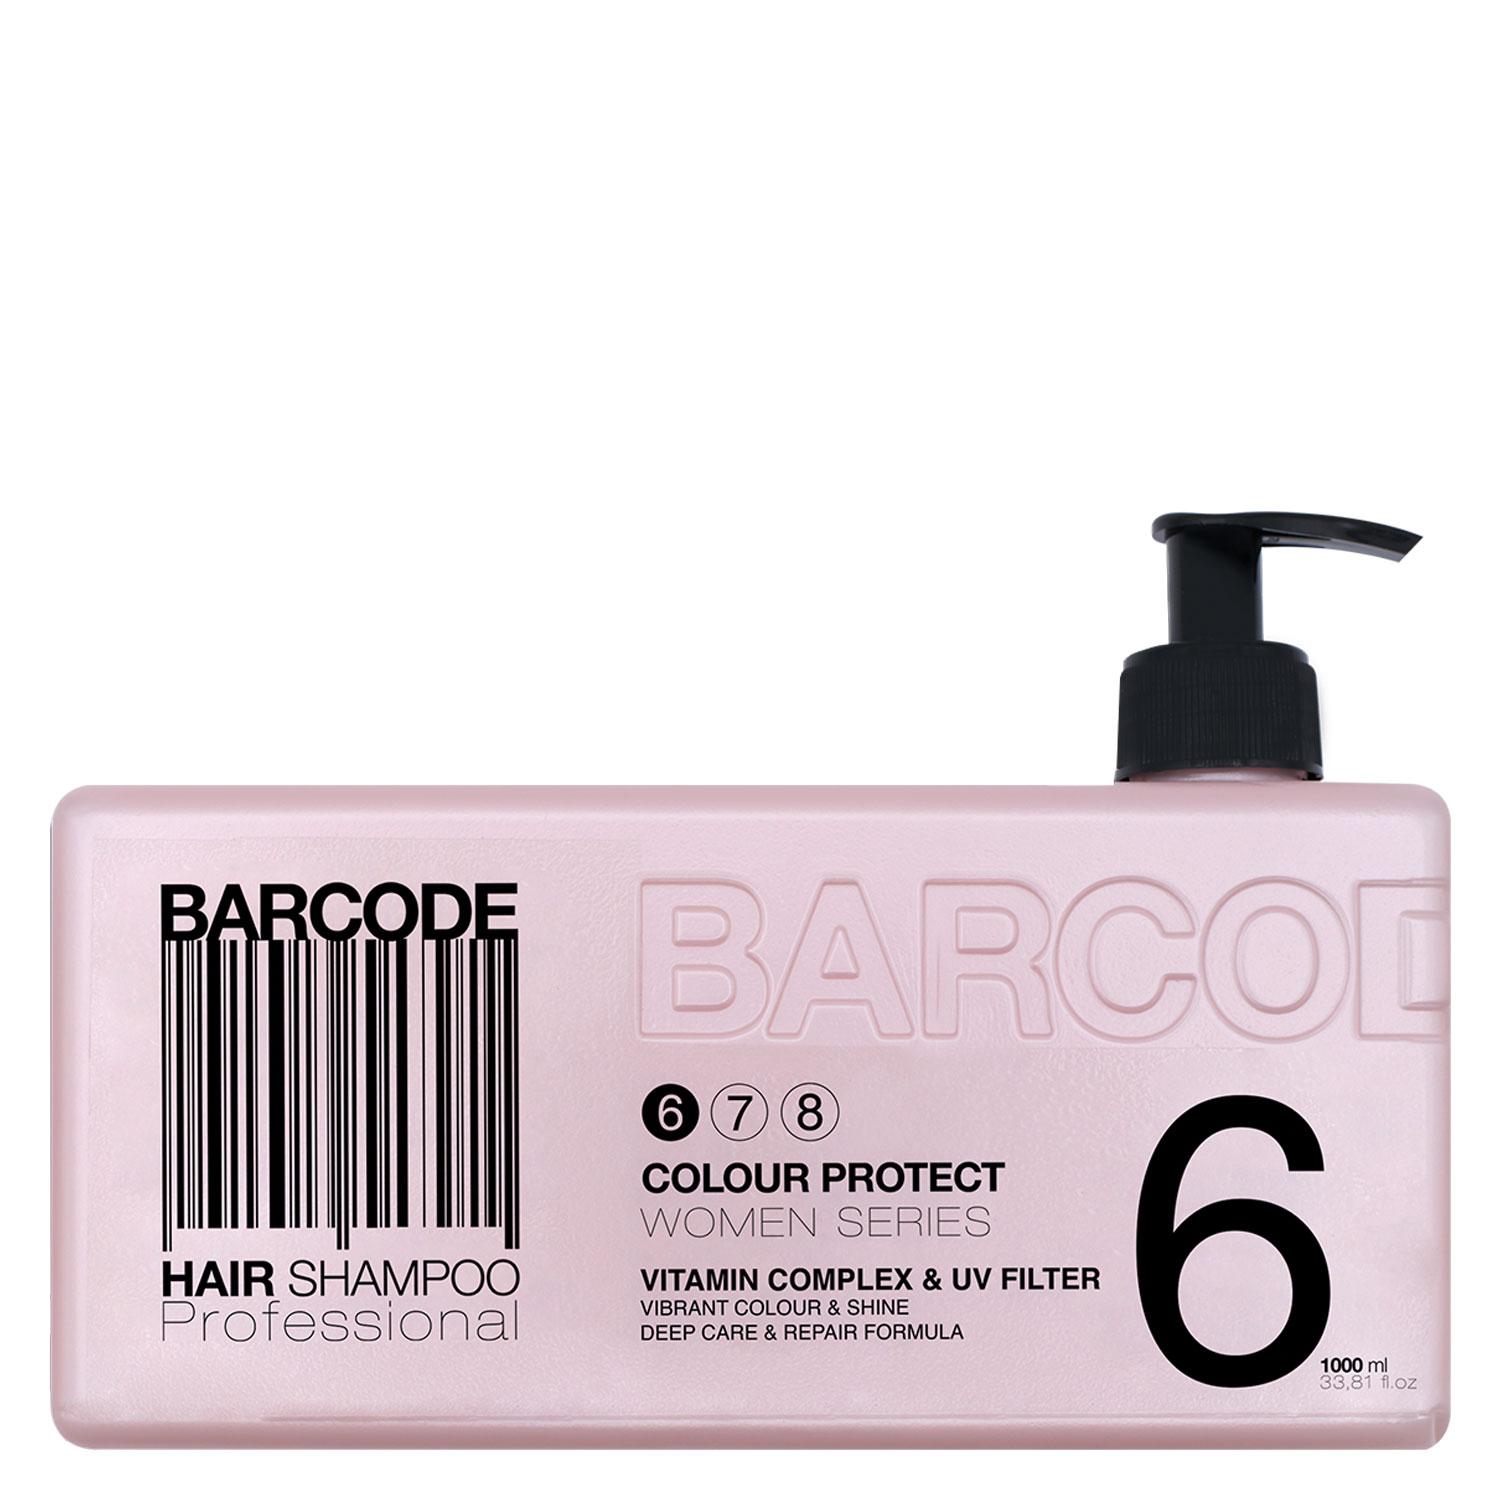 Barcode Women Series - Hair Shampoo Colour Protect